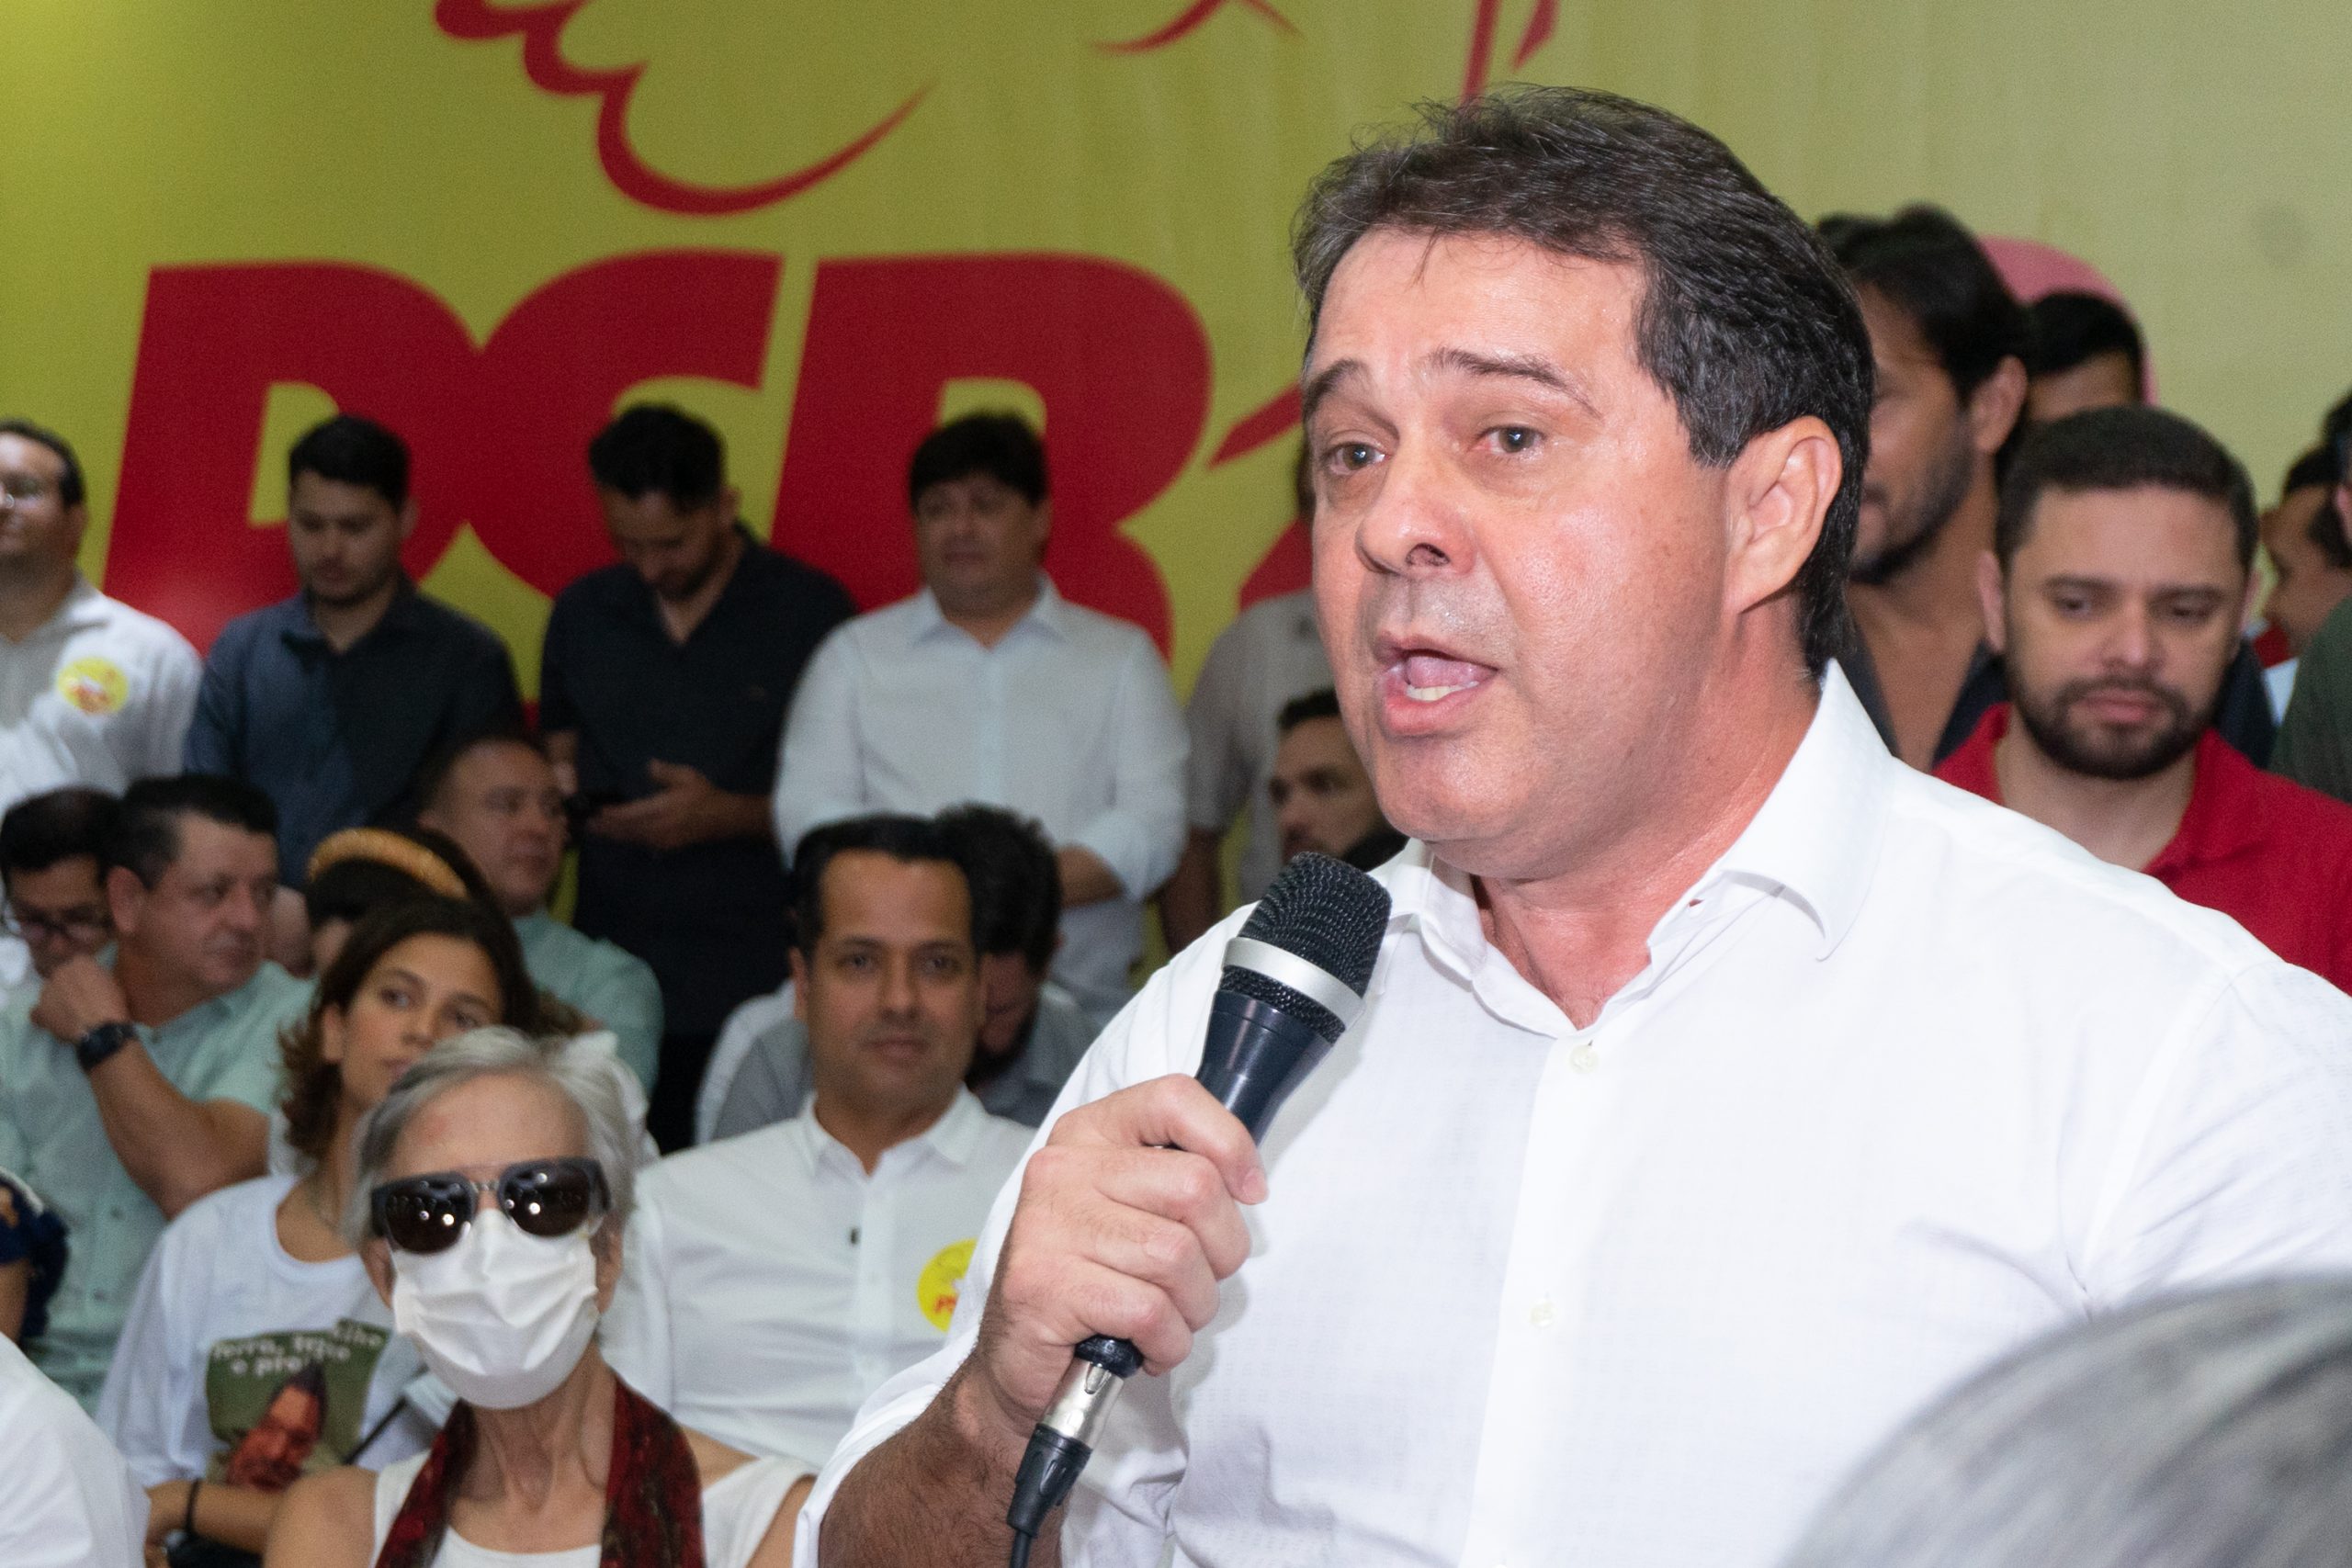 Evandro Leitão anuncia desfiliação do PDT: “Teremos vida nova em outra agremiação”